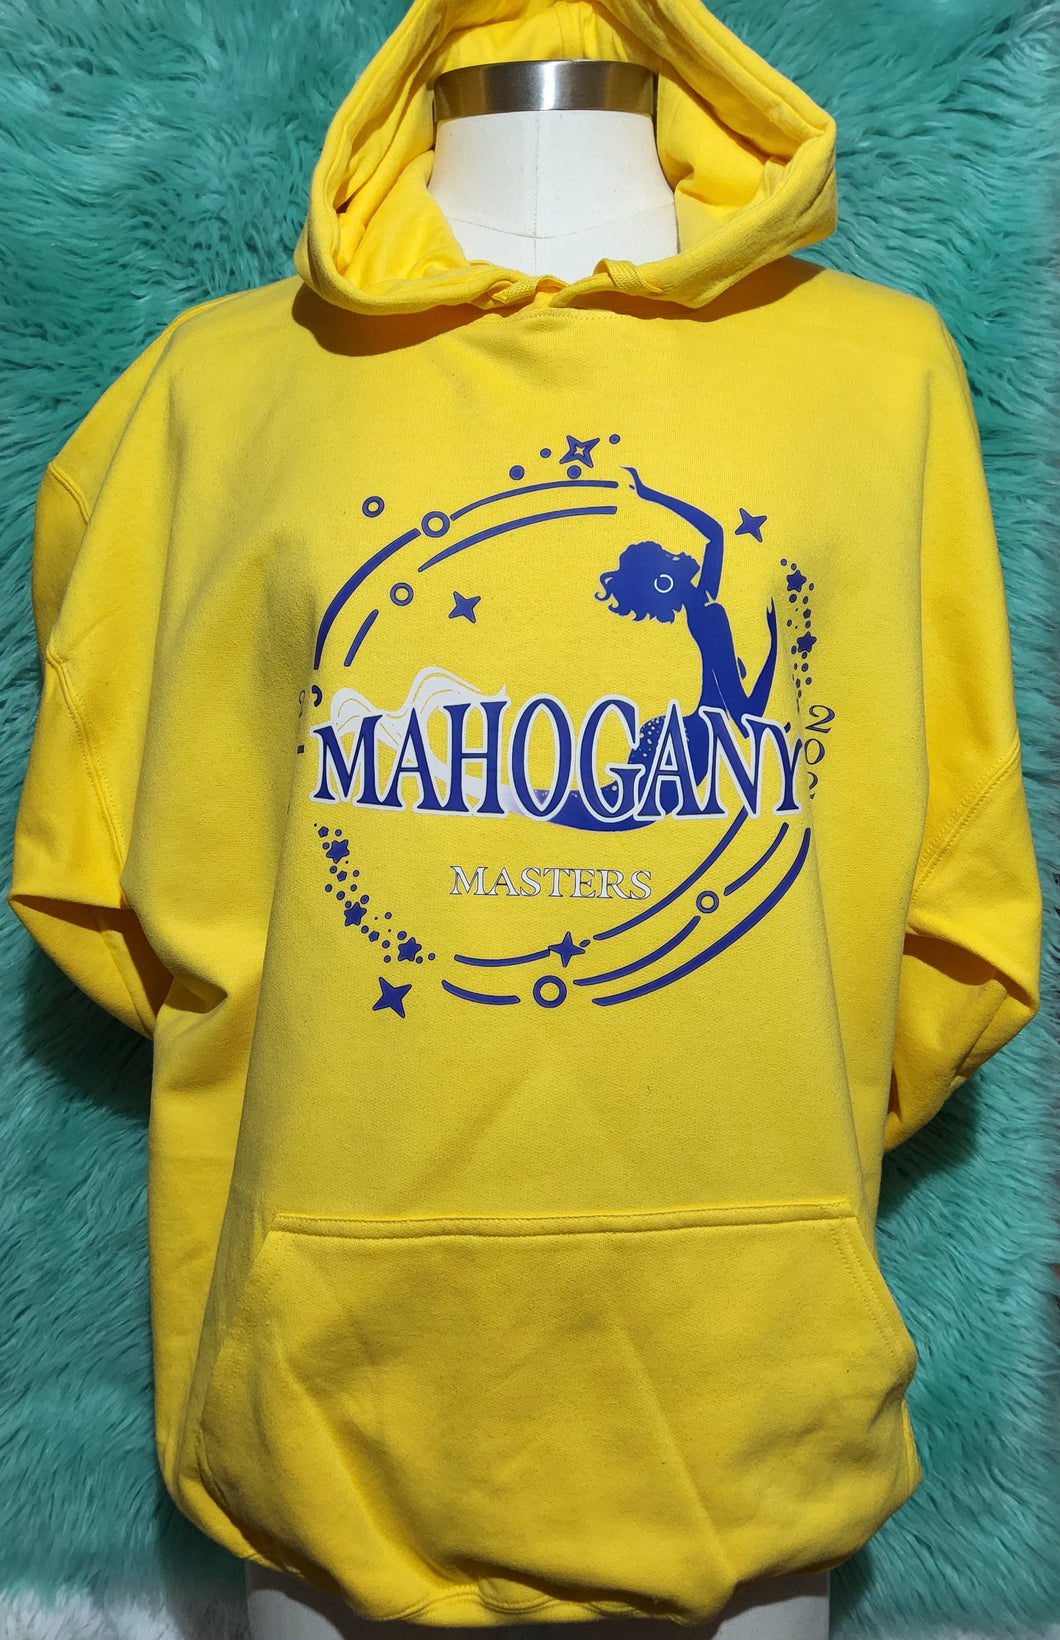 Mahogany Mermaids 10 Year Anniversary Sweat Shirts and Hoodies